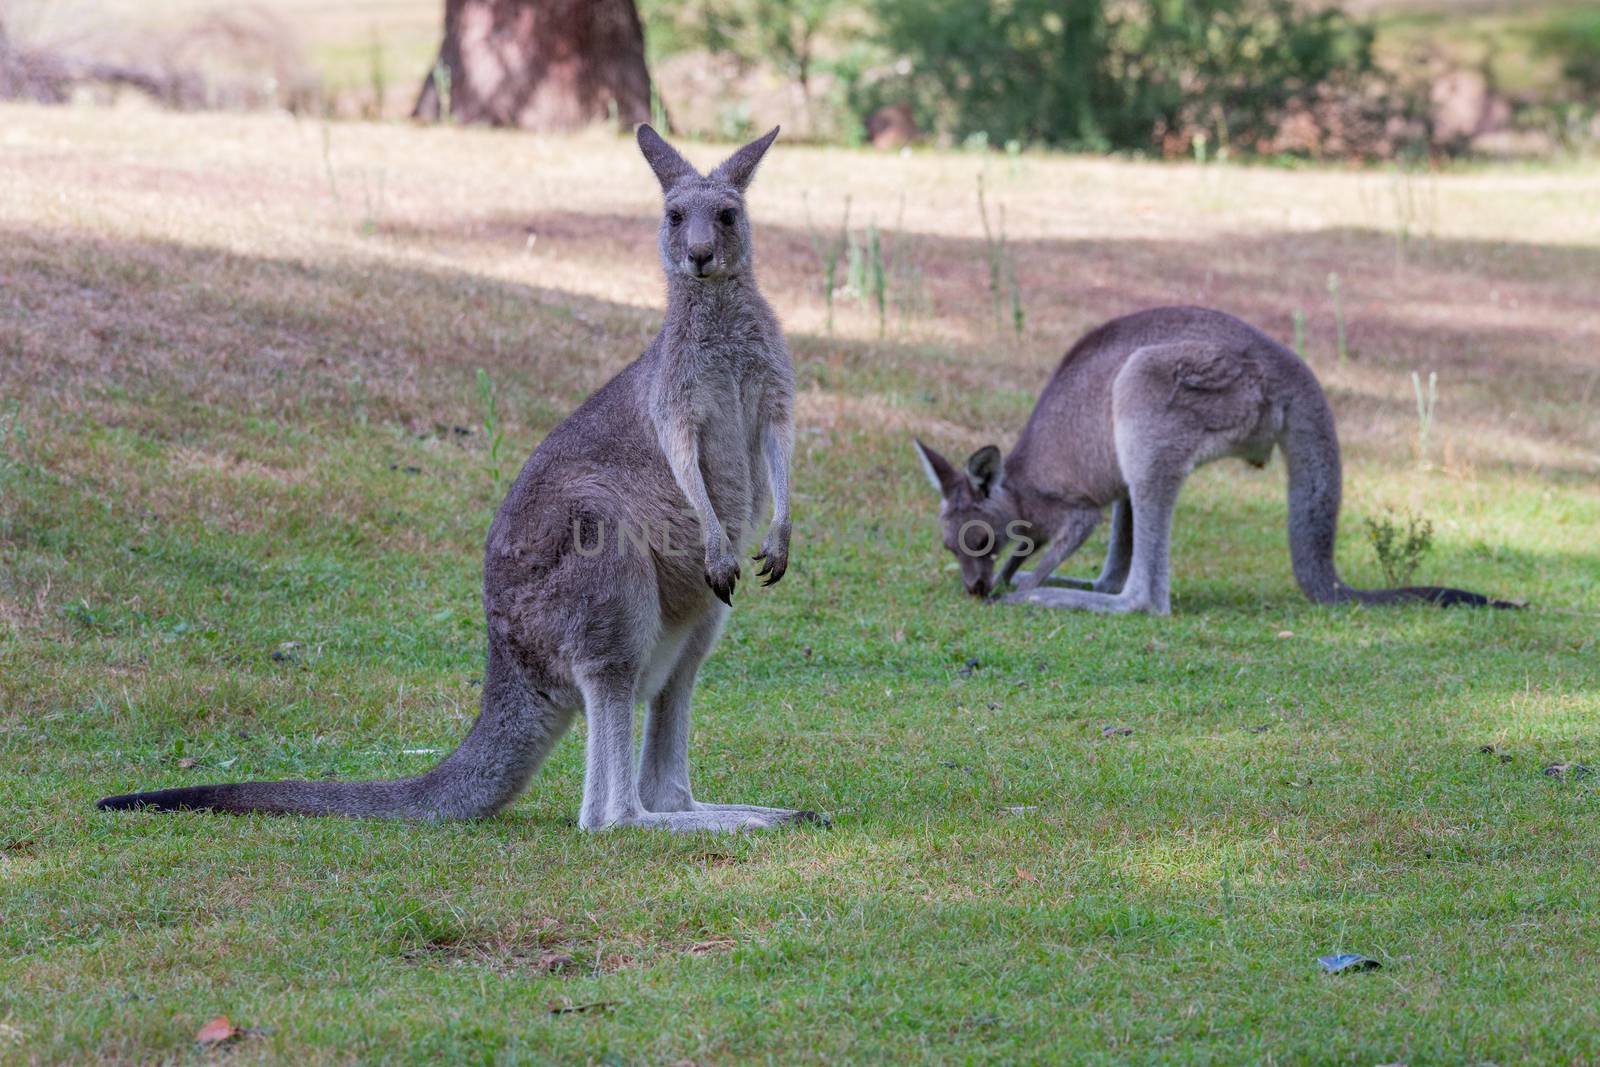 Two kangaroos on a grassy clearing near bush land.  Focus to foreground kangaroo